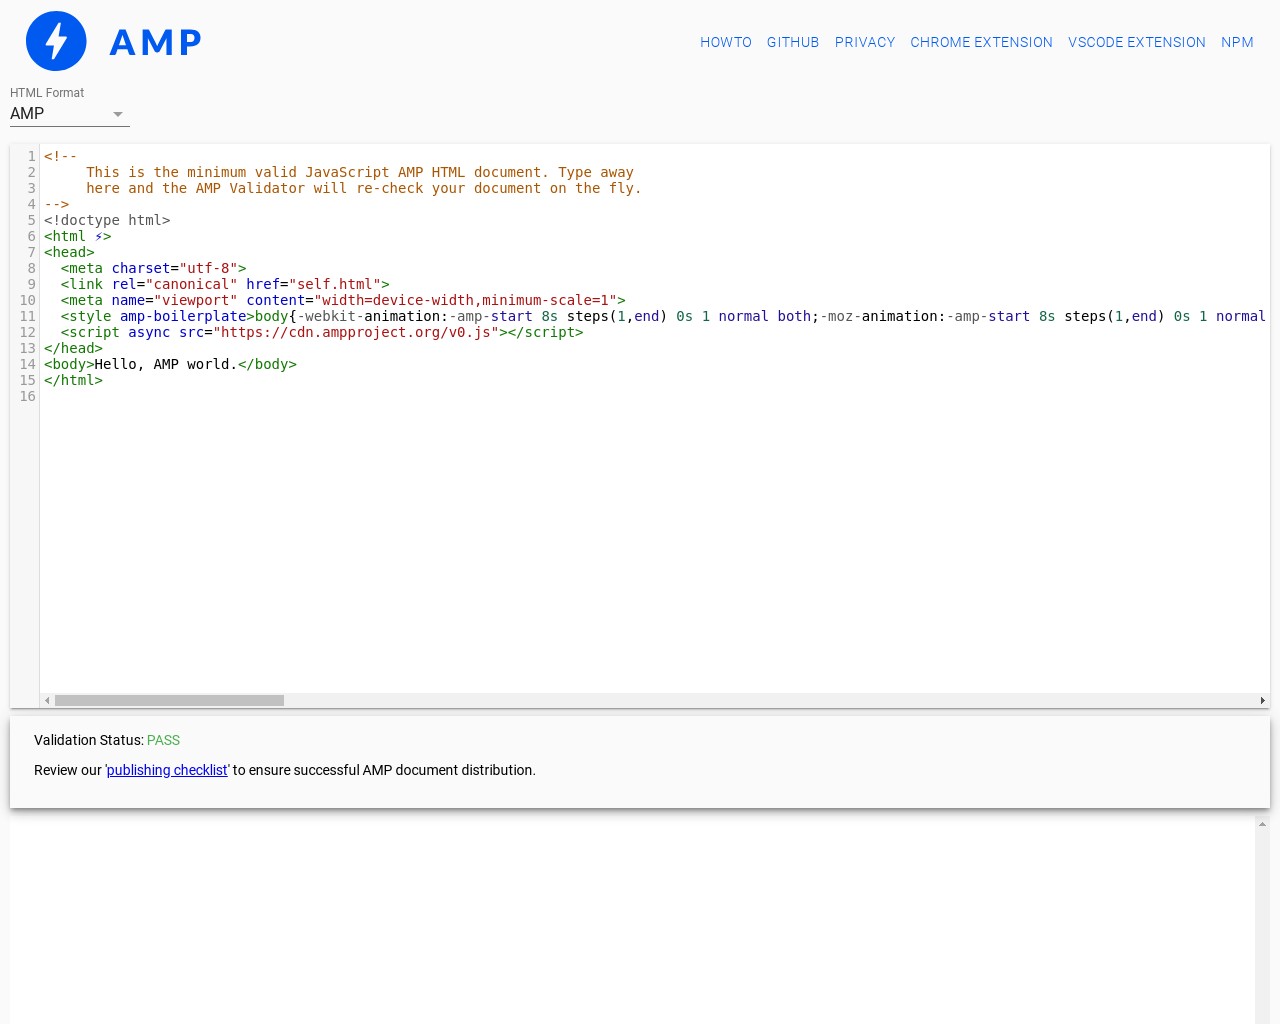 Картинка скриншота сайта - AMP Validator - инструмент для валидации на соответствие правилам мобильных ускоренных страниц